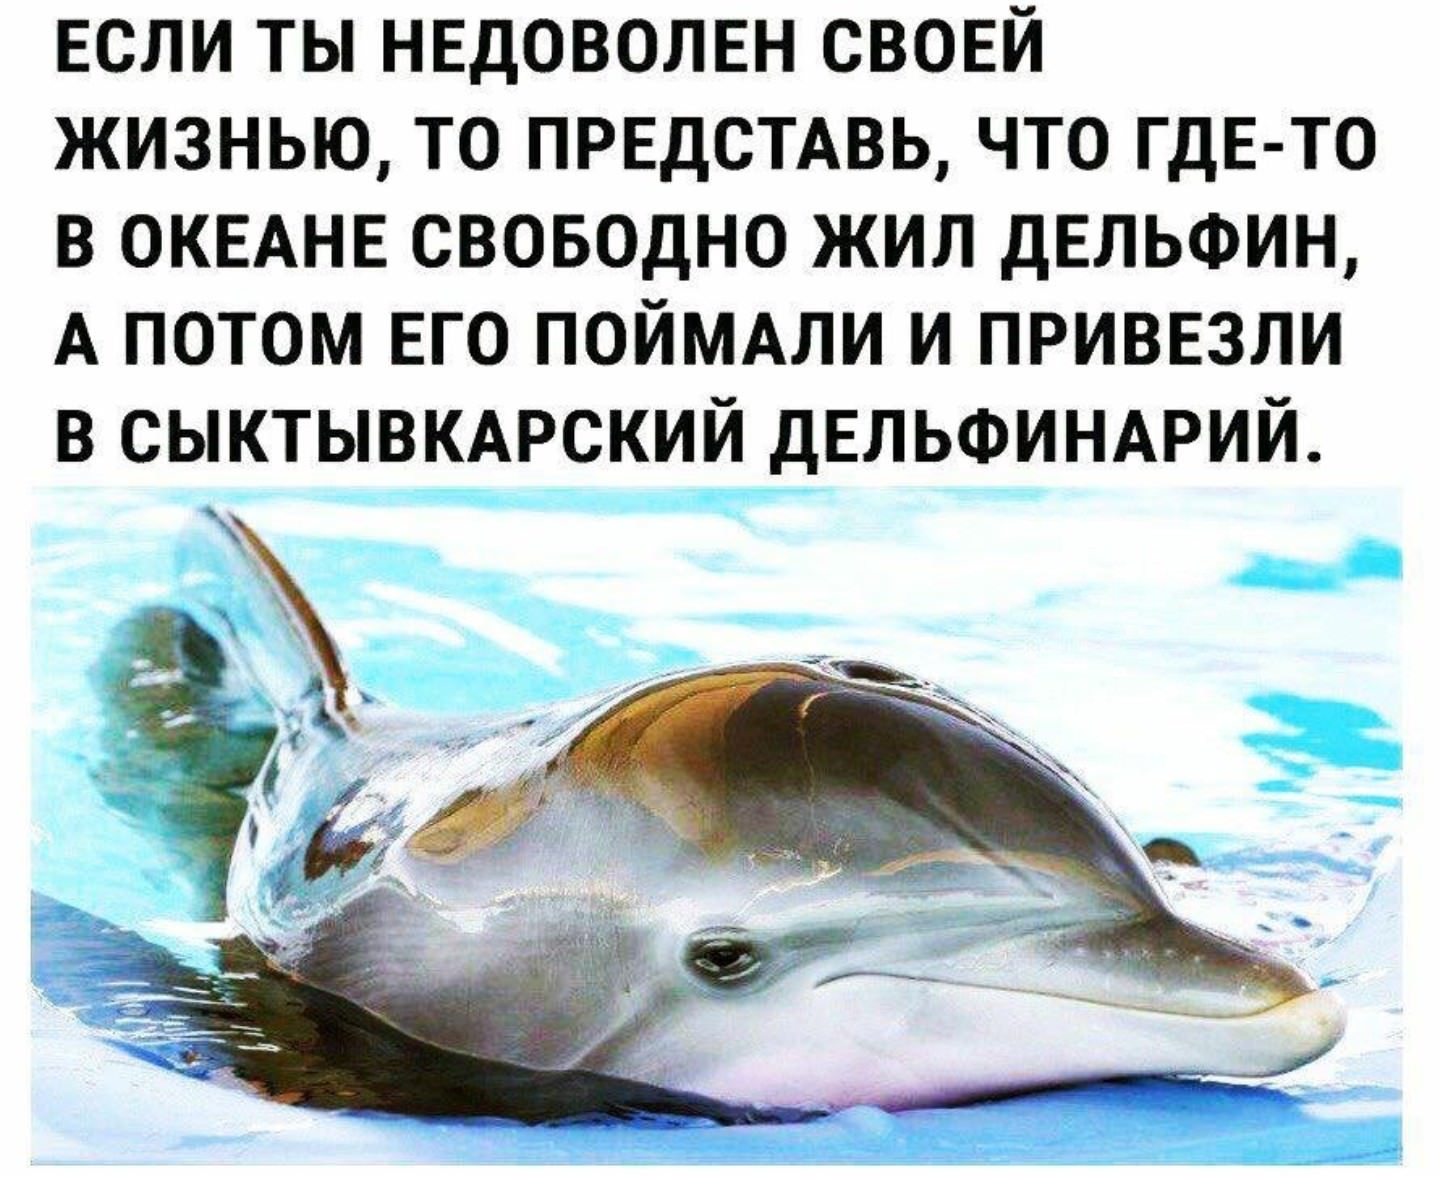 Дельфины живут лет. Шутки про дельфинов. Где живут дельфины в дельфинарии. Где обитает Дельфин. Сыктывкарский дельфинарий.